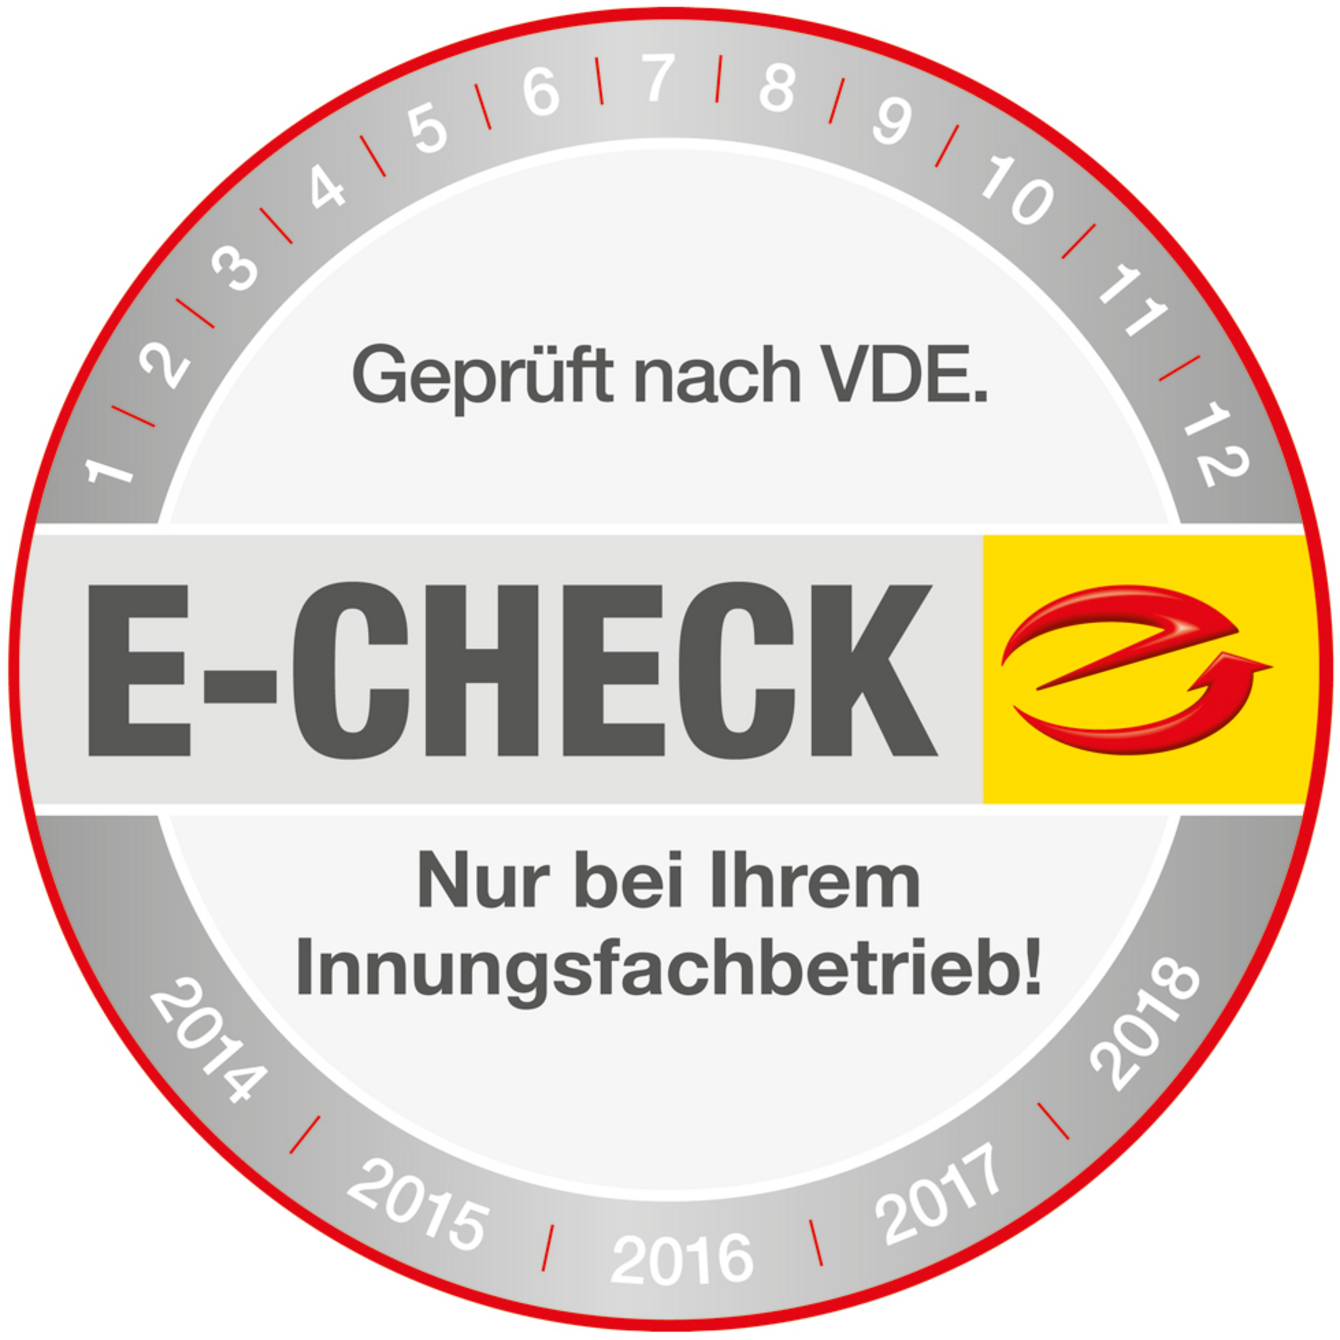 Der E-Check bei TK Elektrotechnik Schönewalde UG in Schönewalde